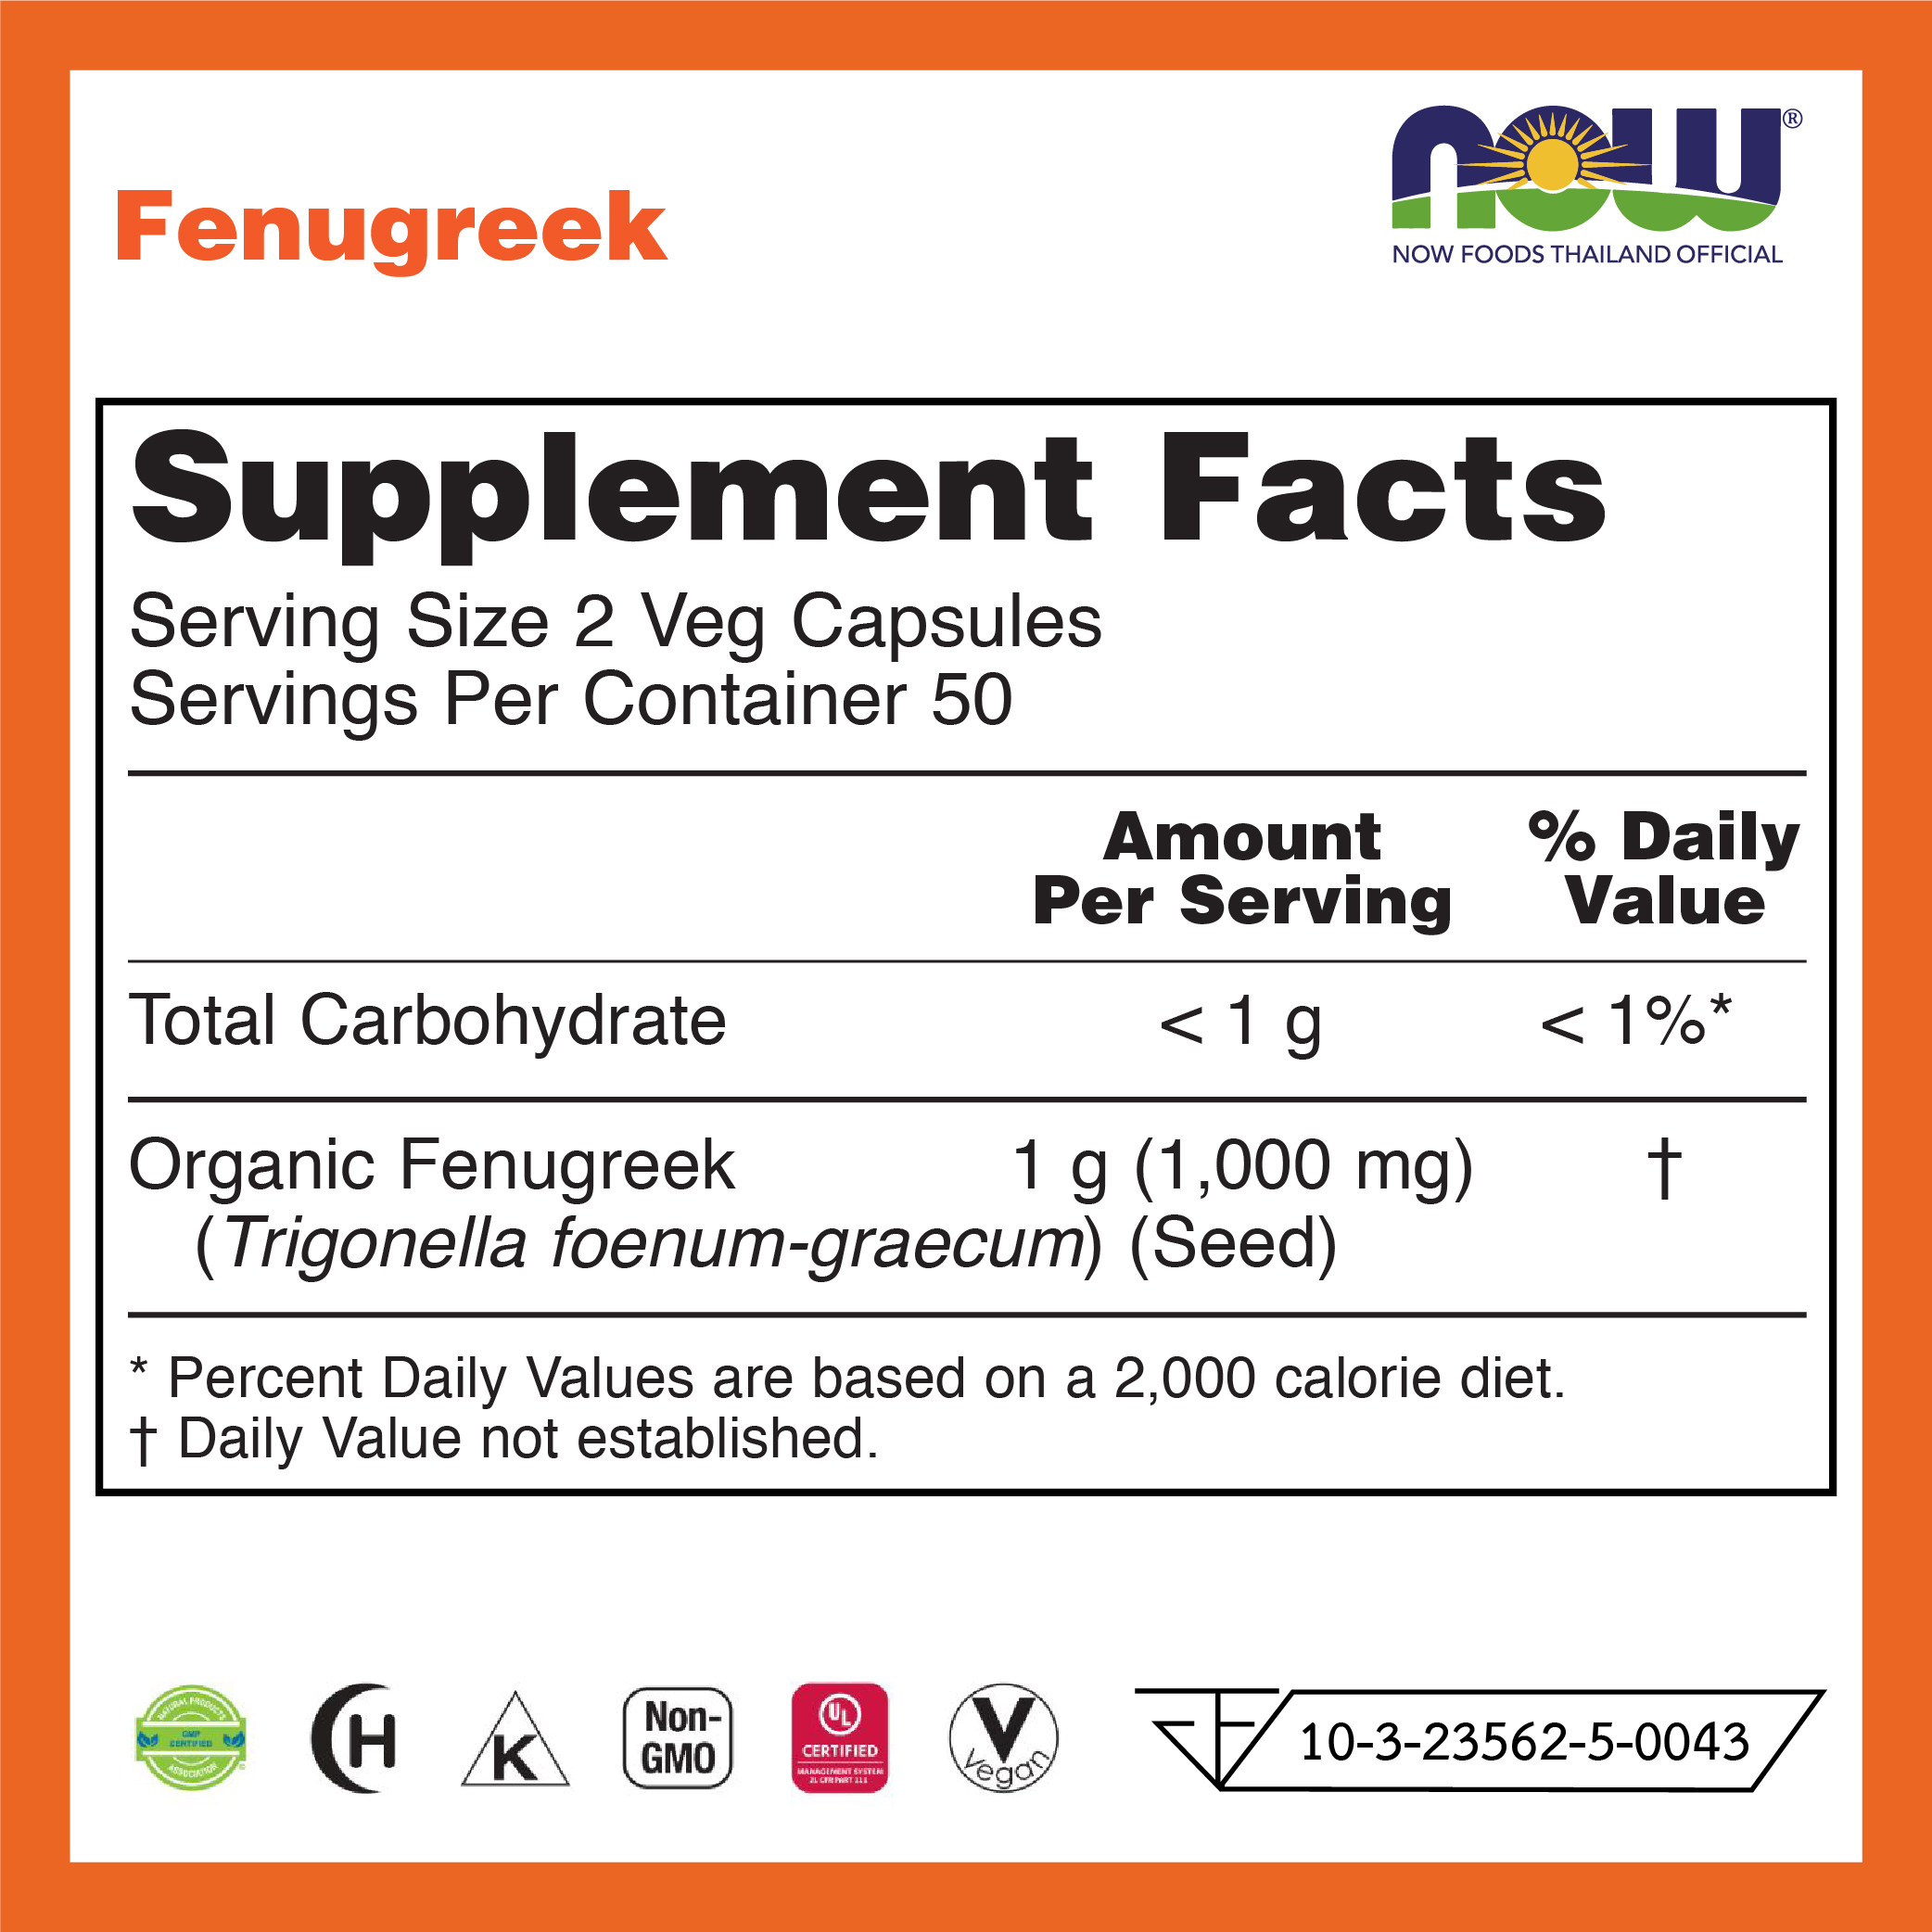 [กรอกโค้ด FEB80 ลดทันที 80.-] NOW Fenugreek 500 mg